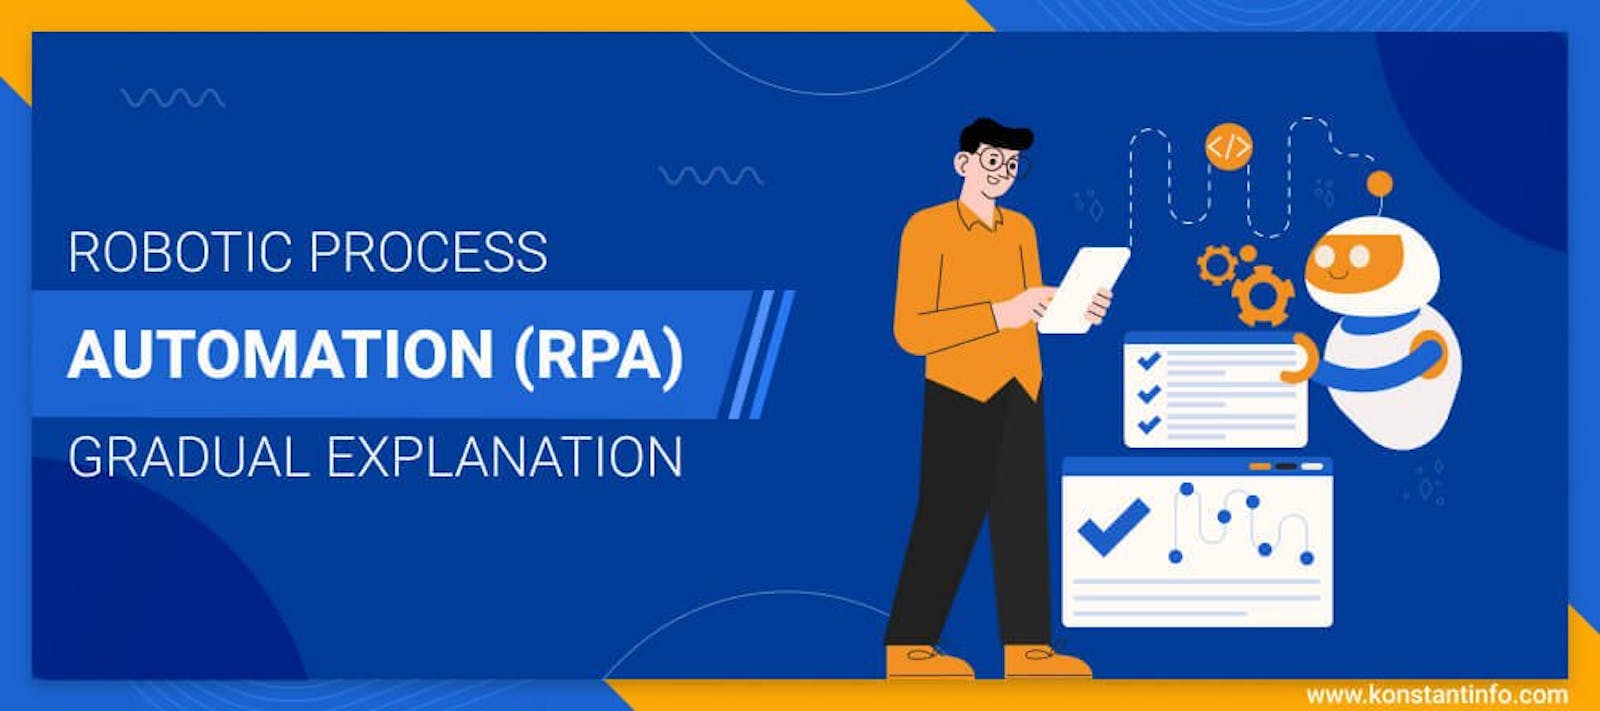 Robotic Process Automation (RPA): Gradual Explanation